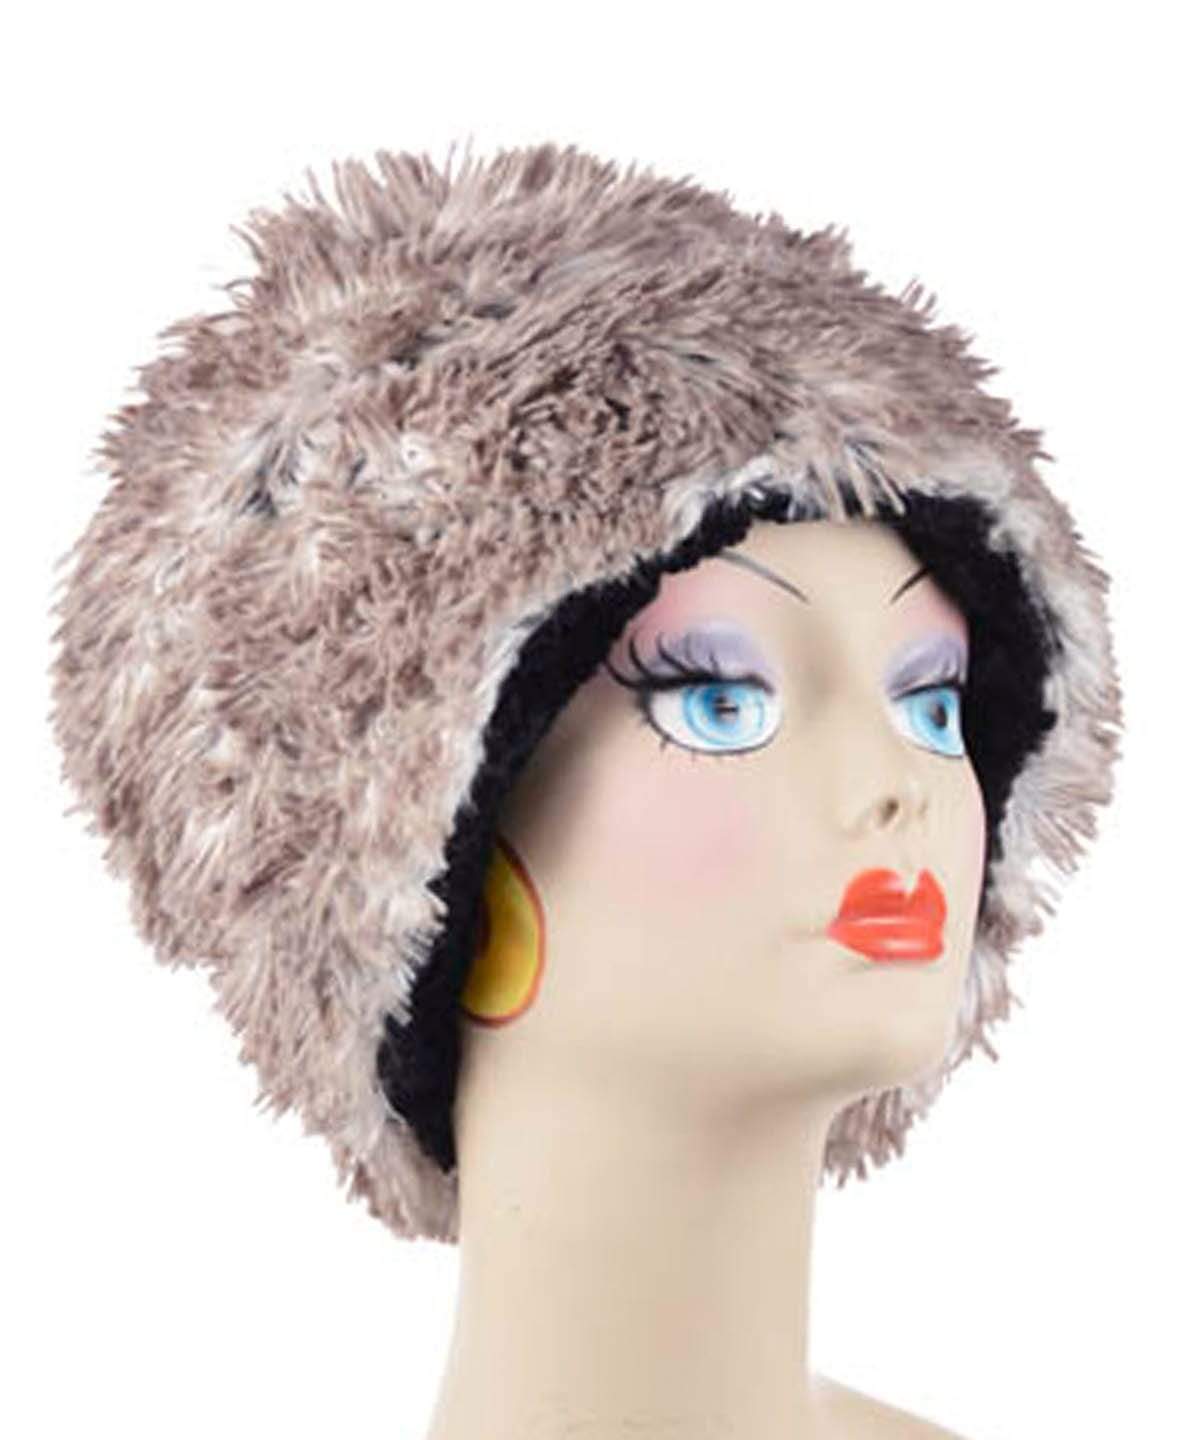 Cuffed Pillbox Hat Arctic Fox with Cuddly Faux Fur in Black